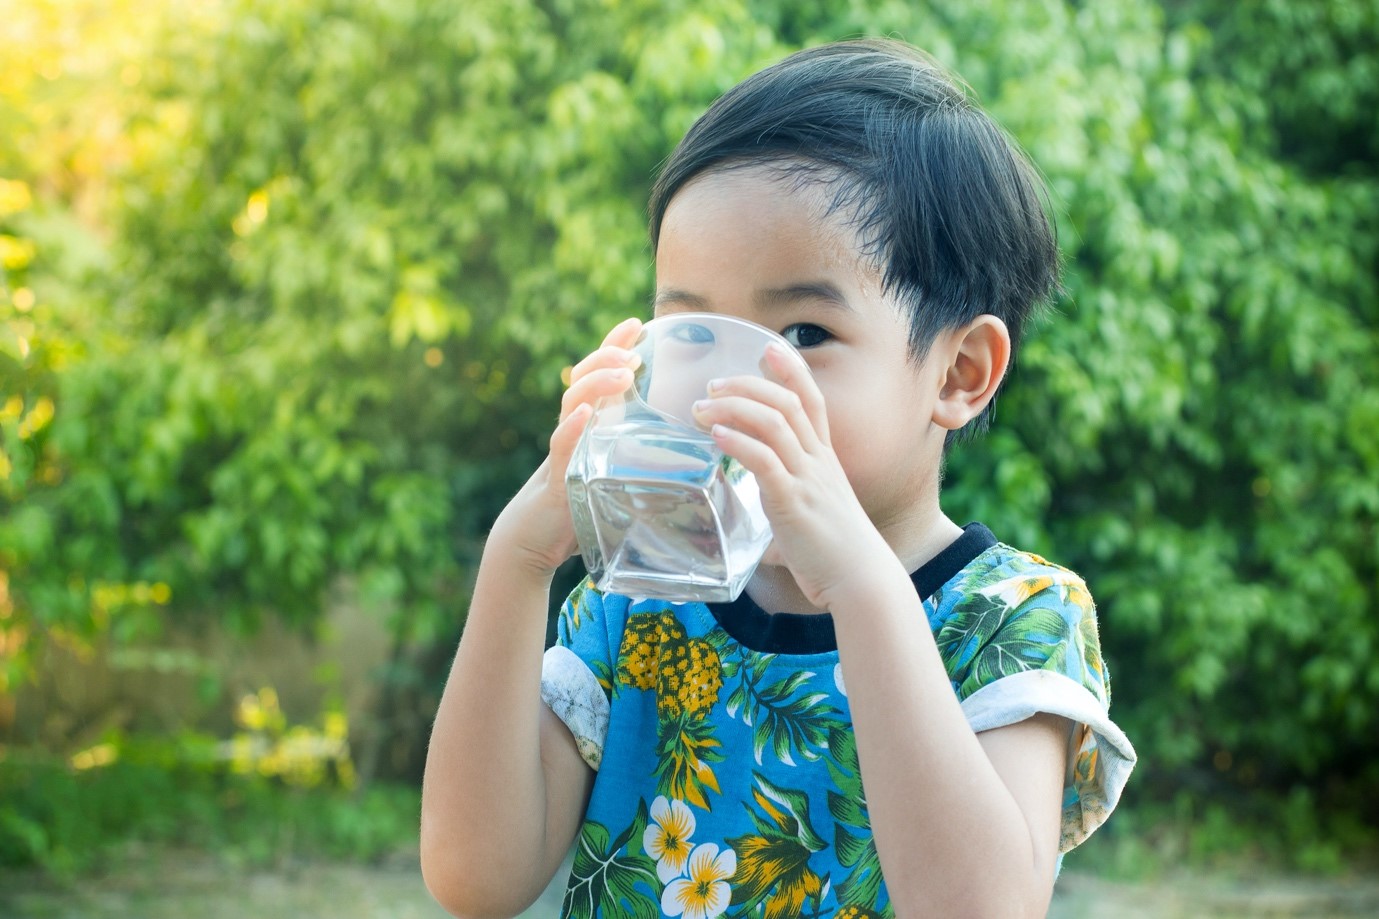 Khawatir si Kecil Dehidrasi? Ini Tips Mendorong Anak Minum Lebih Banyak